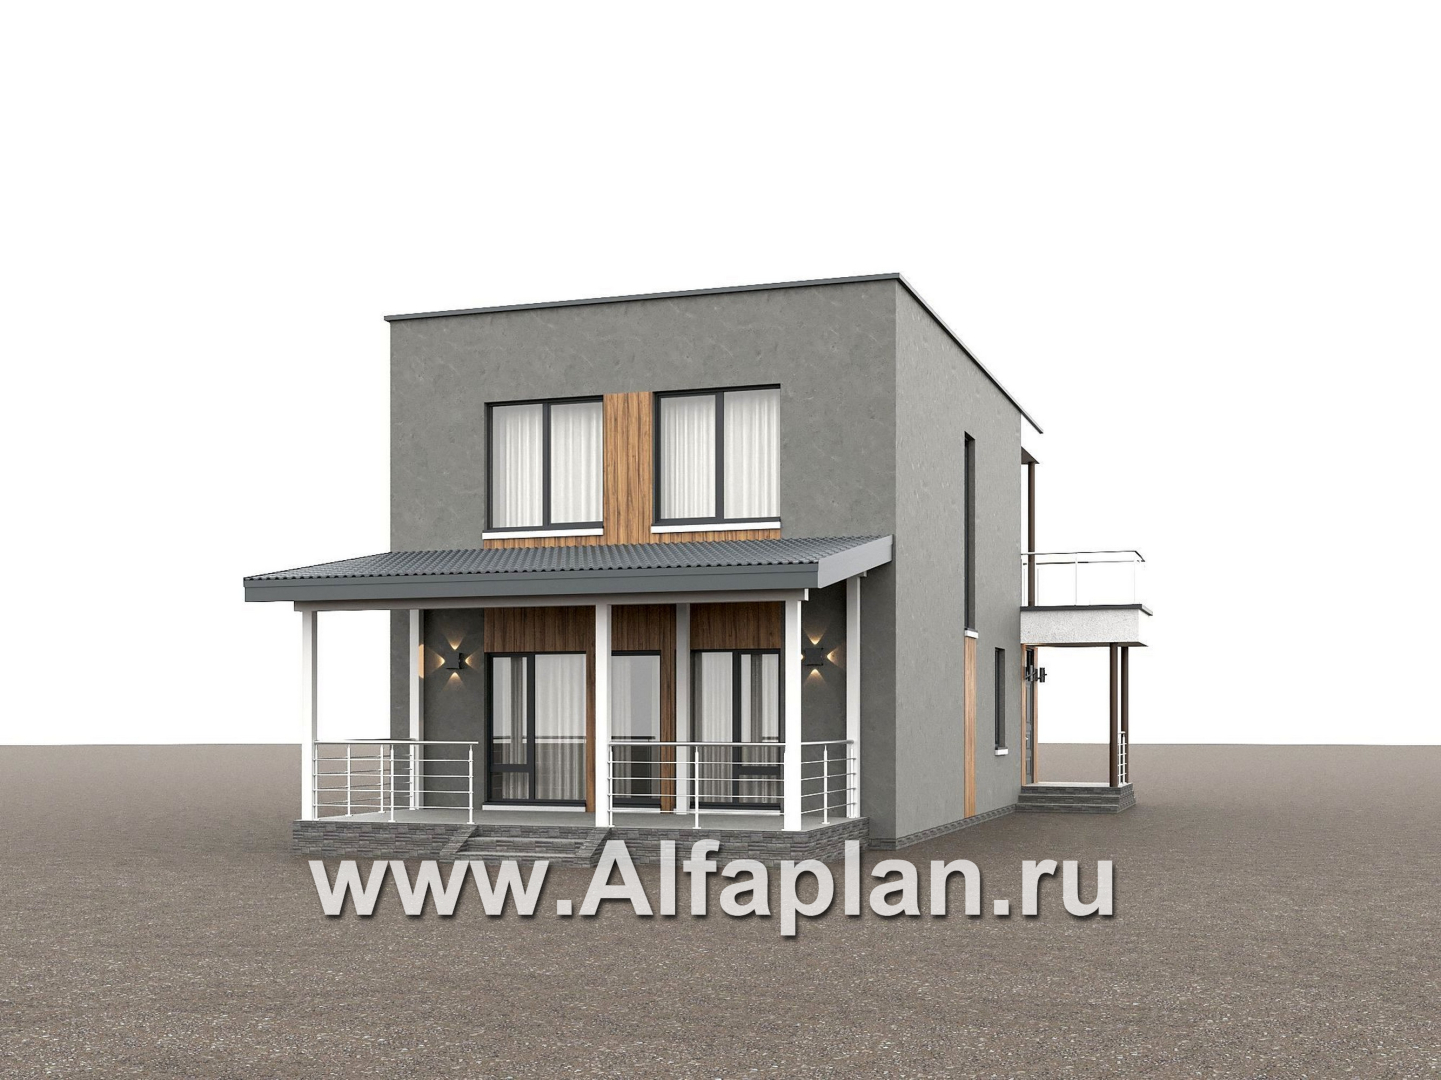 Проекты домов Альфаплан - "Викинг" - проект дома, 2 этажа, с сауной и с террасой, в стиле хай-тек - дополнительное изображение №3